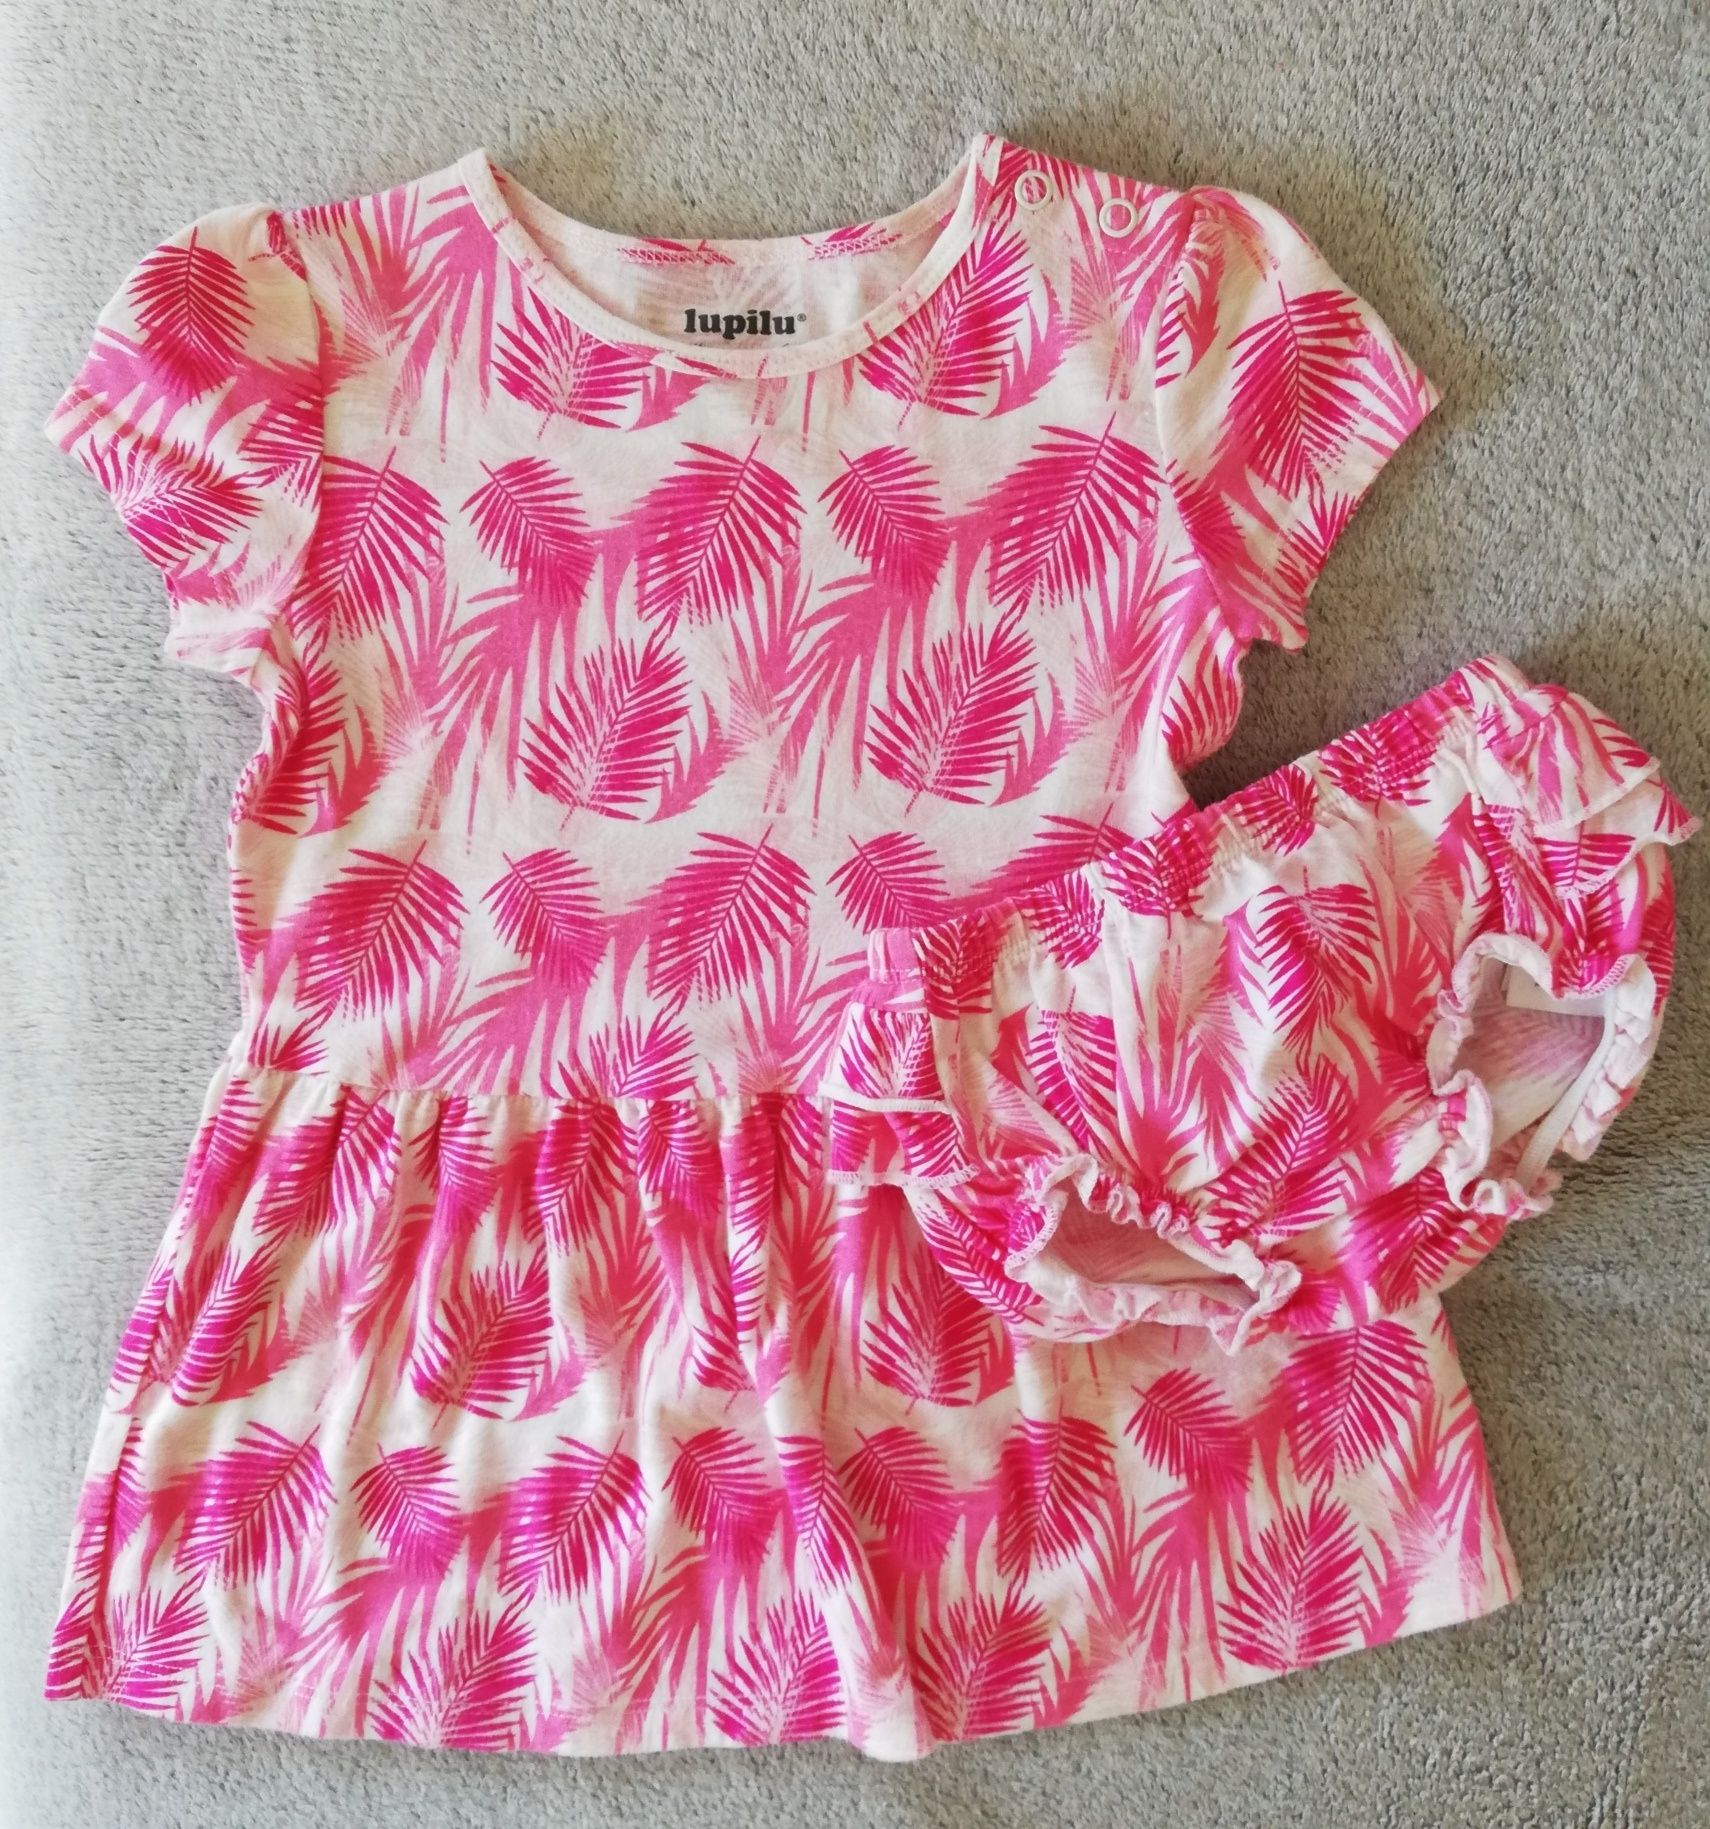 Lupilu komplet sukienka z majtkami bawełna różowe liście 86/92